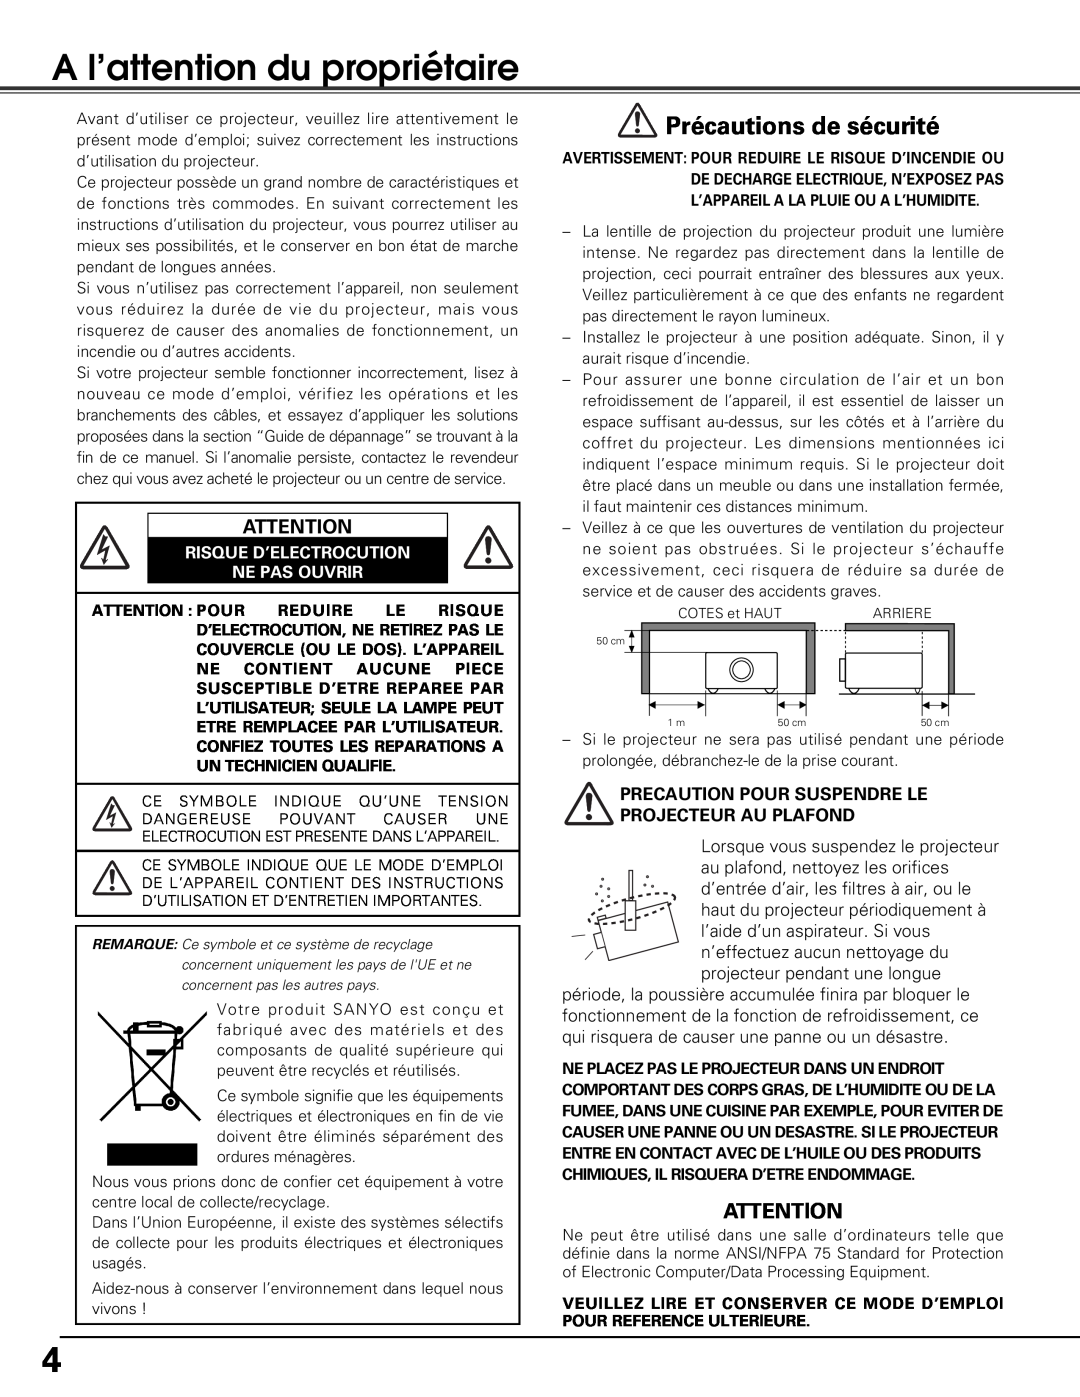 Sanyo PLV-Z5BK manual A l’attention du propriétaire, Précautions de sécurité, Risque D’Electrocution Ne Pas Ouvrir 